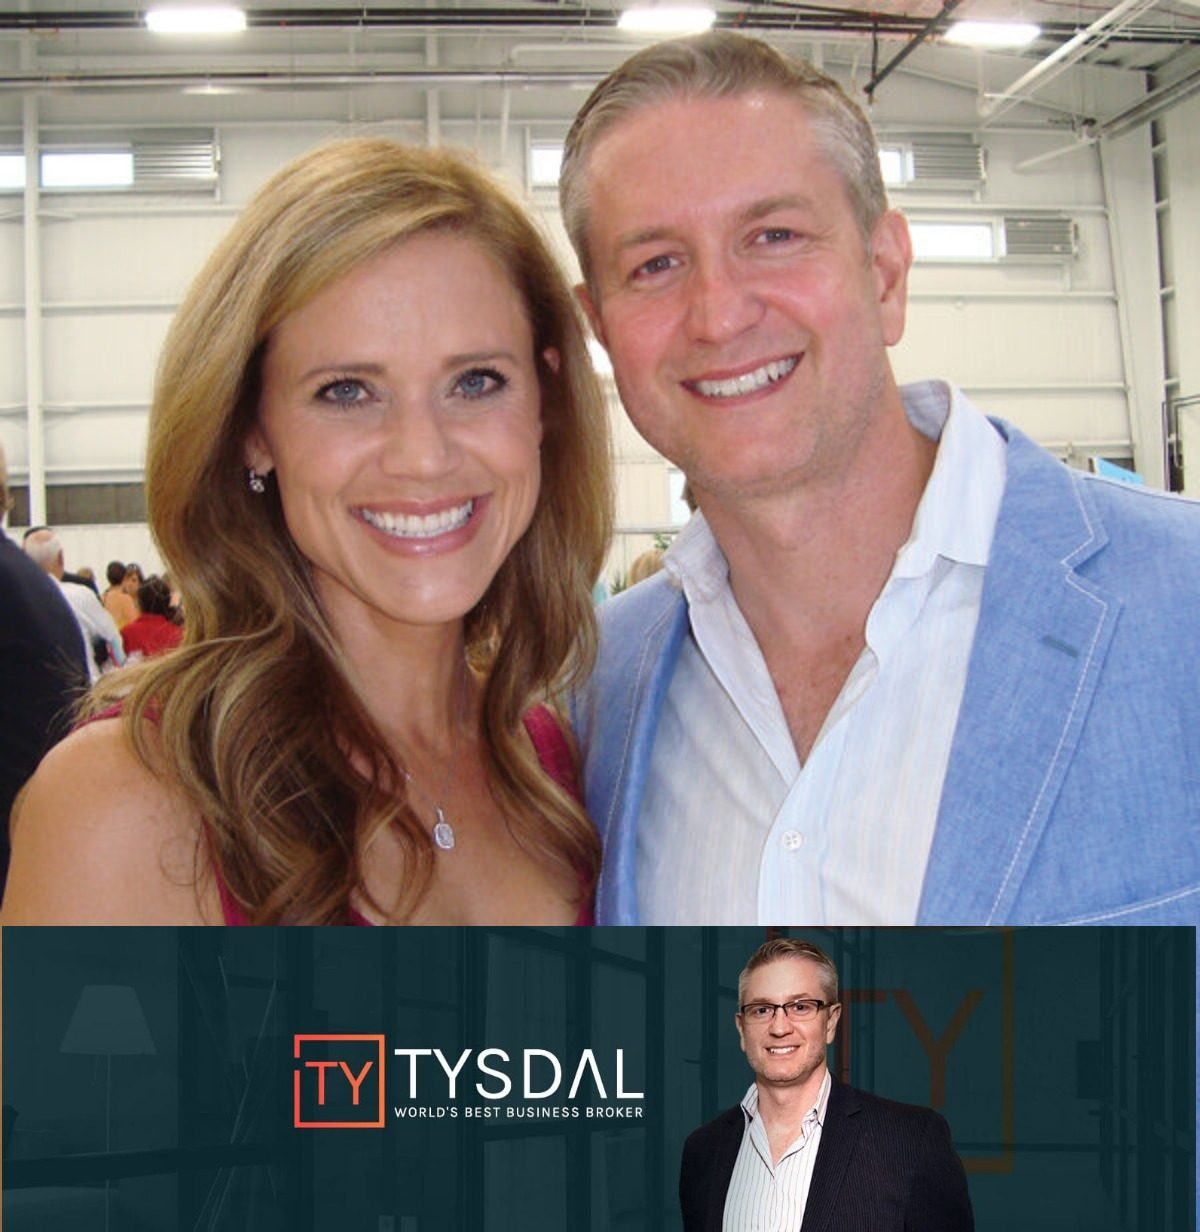 Tyler Tysdal Entrepreneur with Spouse Natalie Tysdal